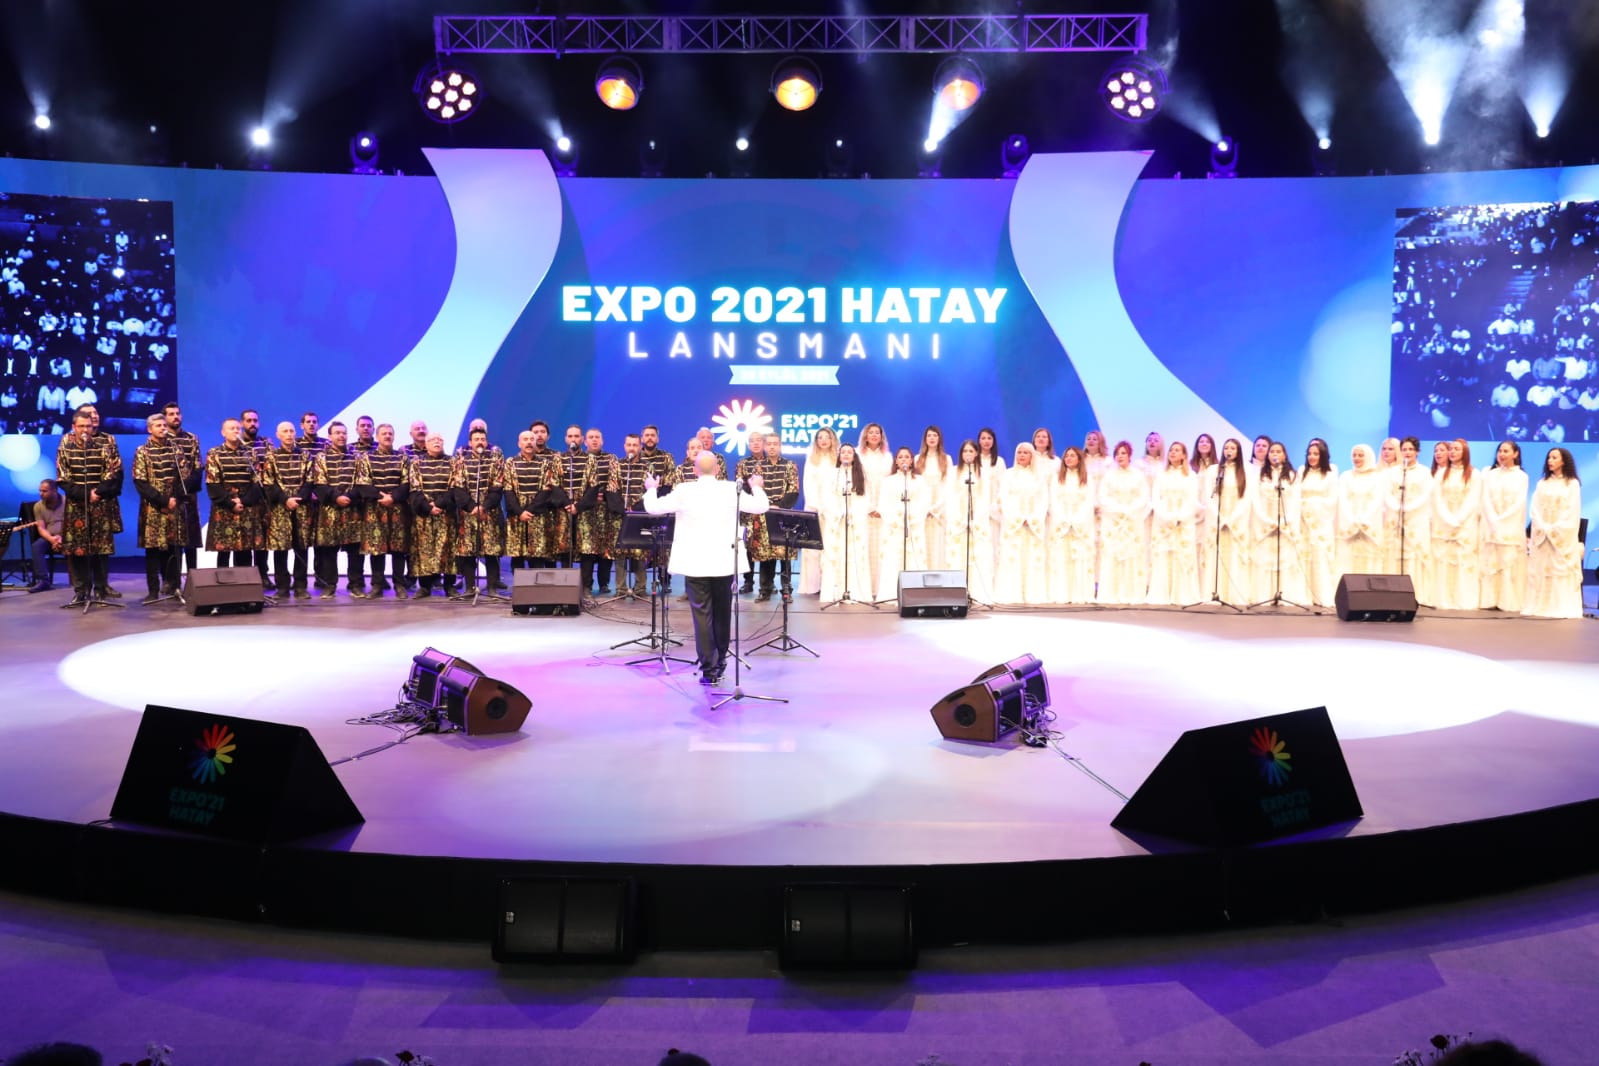 EXPO 2021 HATAY LANSMANI CHP LİDERİ KEMAL KILIÇDAROĞLU’NUN KATILIMIYLA YAPILDI